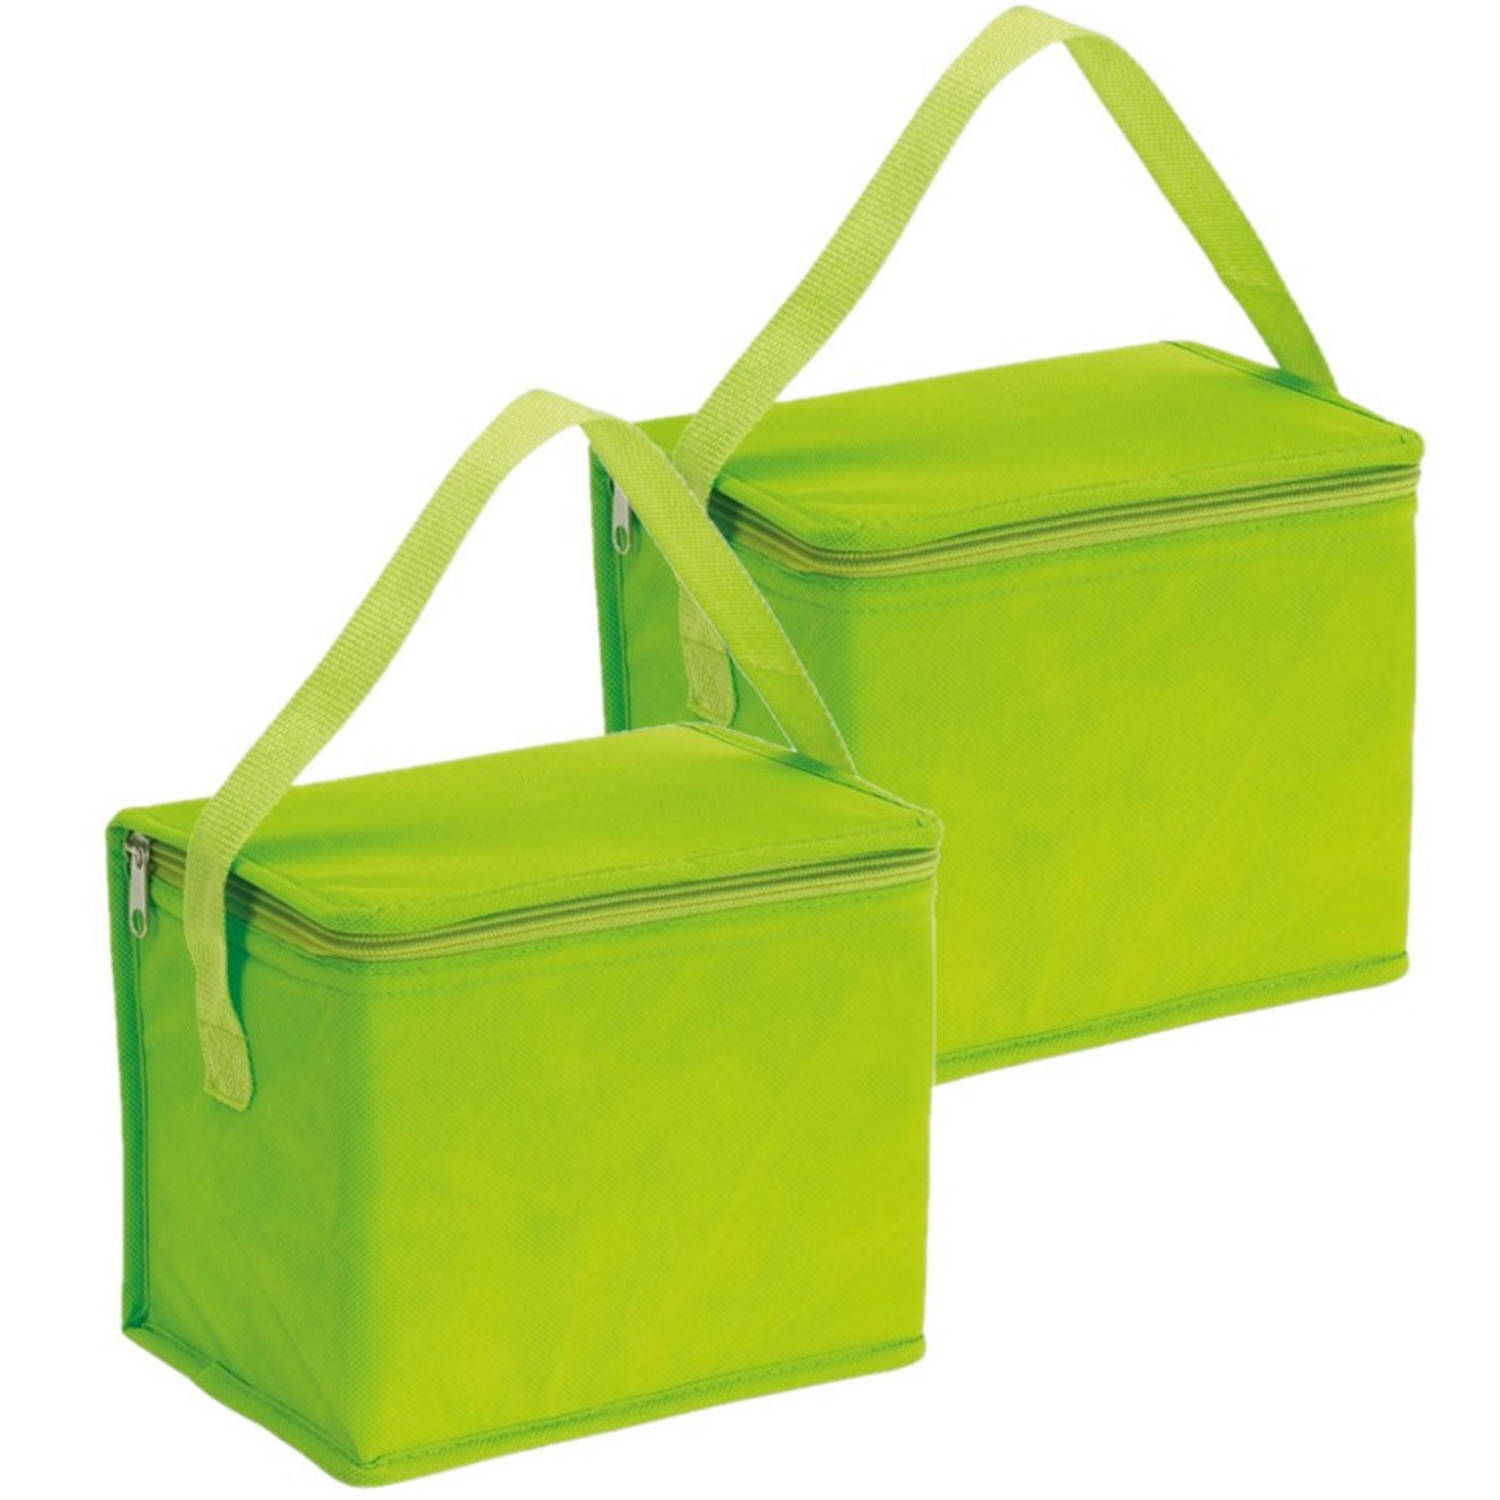 2x stuks kleine koeltassen voor lunch groen 20 x 13 x 17 cm 4.5 liter - Koeltas